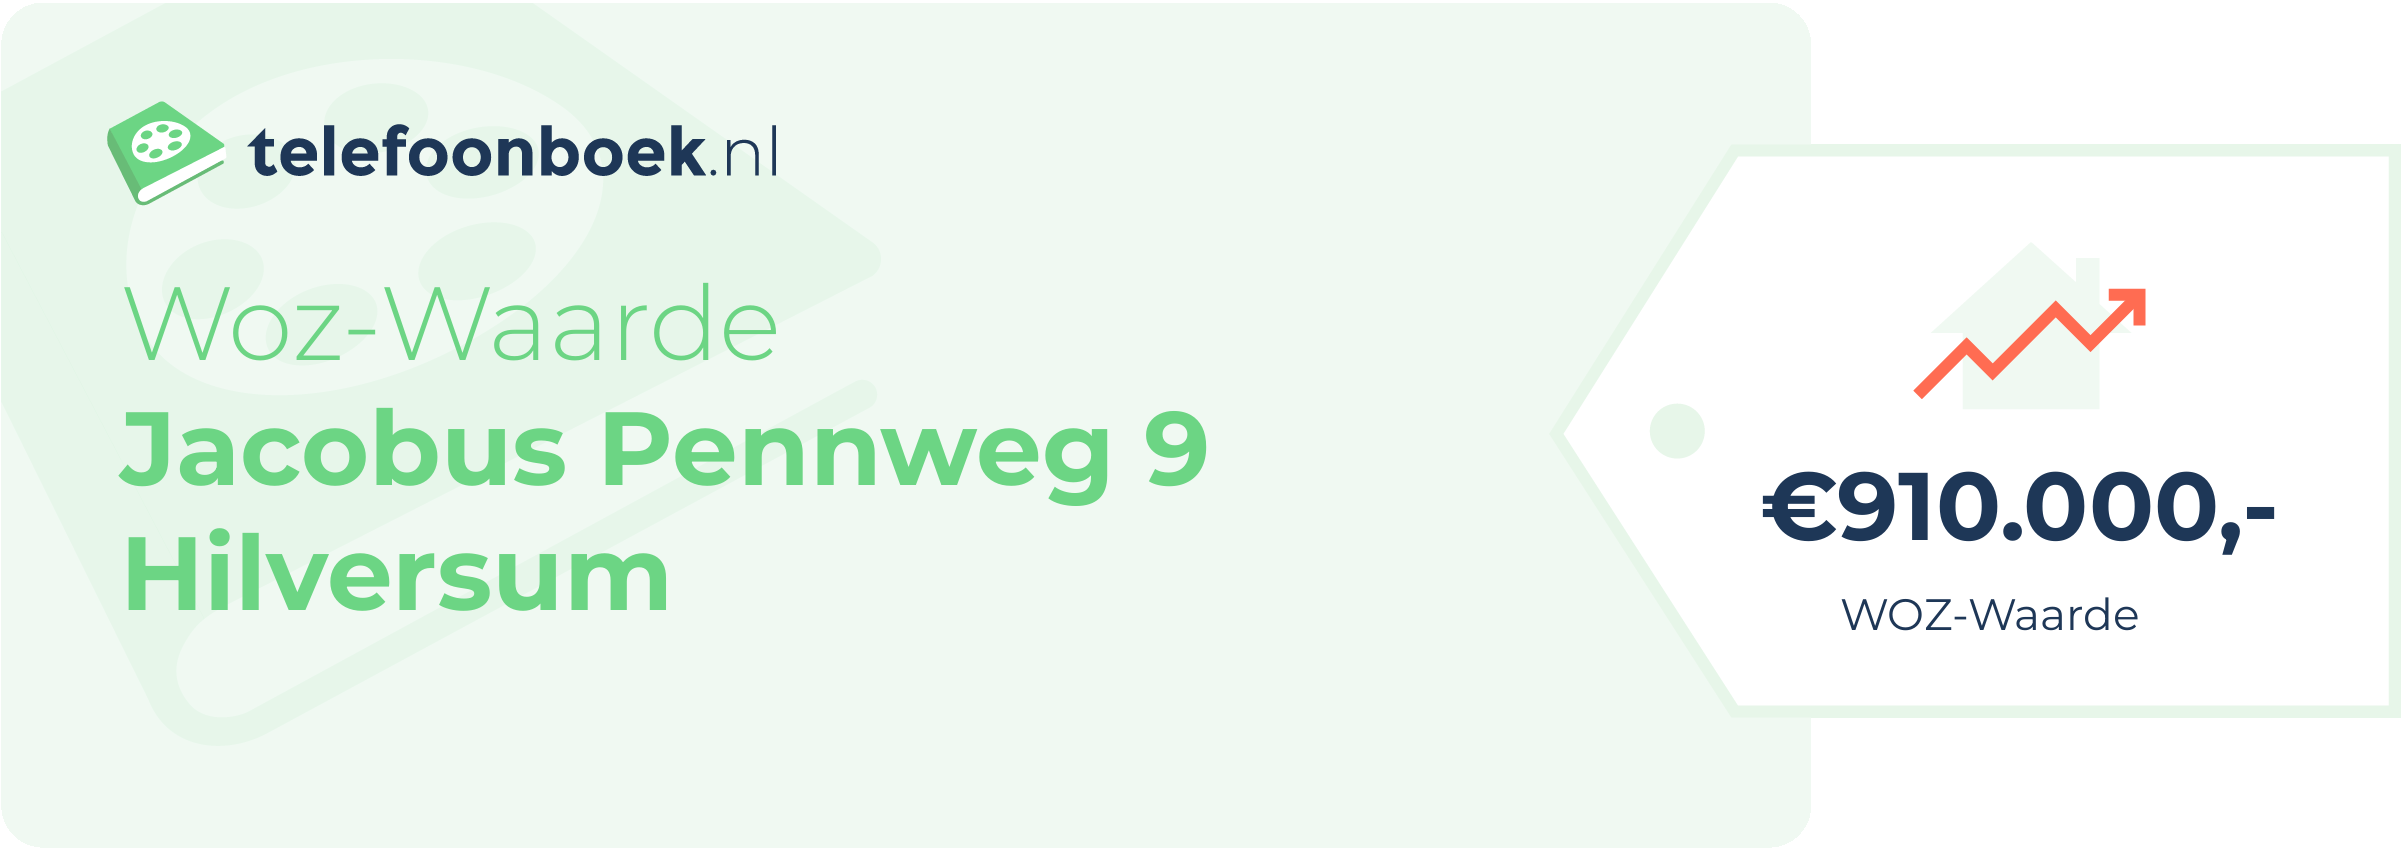 WOZ-waarde Jacobus Pennweg 9 Hilversum